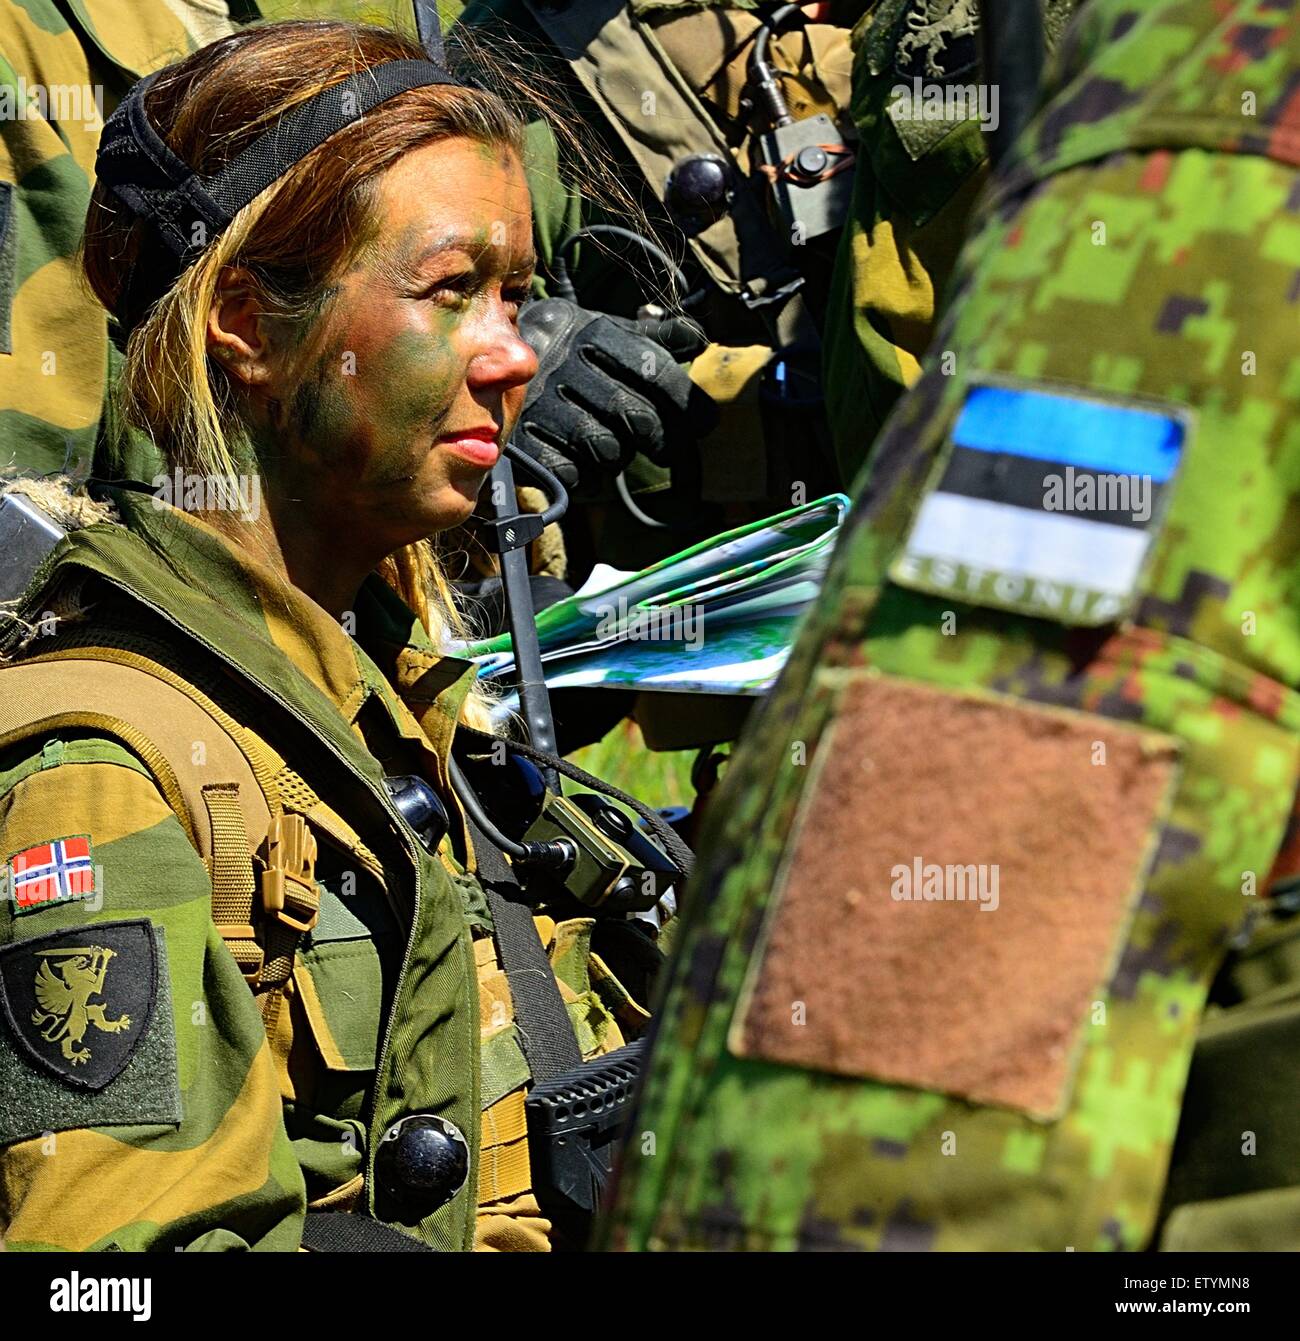 Una mujer soldado con el 2º Batallón de Infantería del Ejército noruego realizara un examen posterior a la intervención tras un ejercicio de entrenamiento situacional durante el ejercicio el sable de la huelga el 10 de junio de 2015, Letonia Adazi. Foto de stock